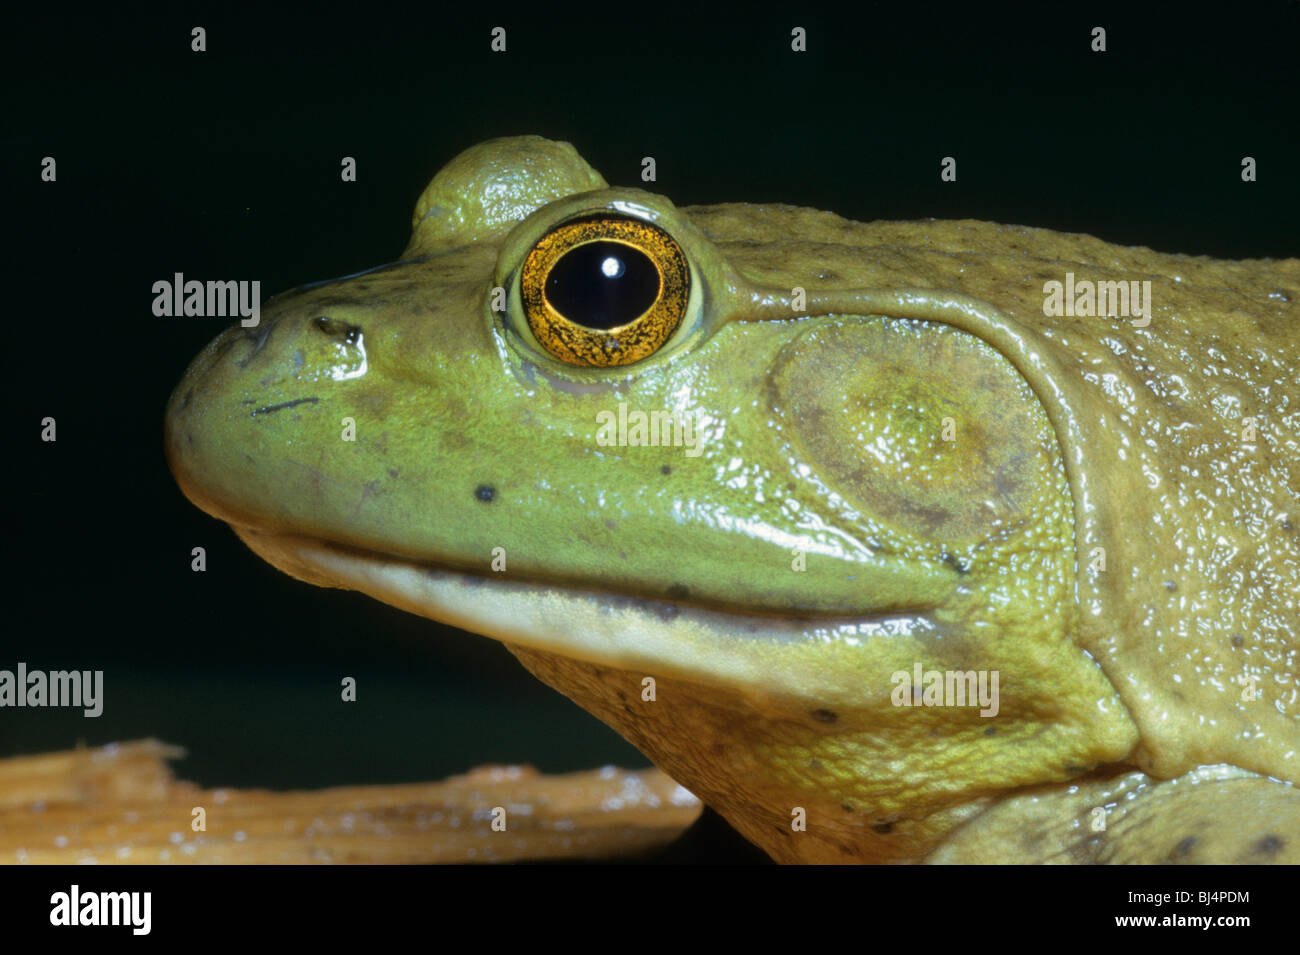 American Bullfrog (Rana catesbeiana), portrait Stock Photo